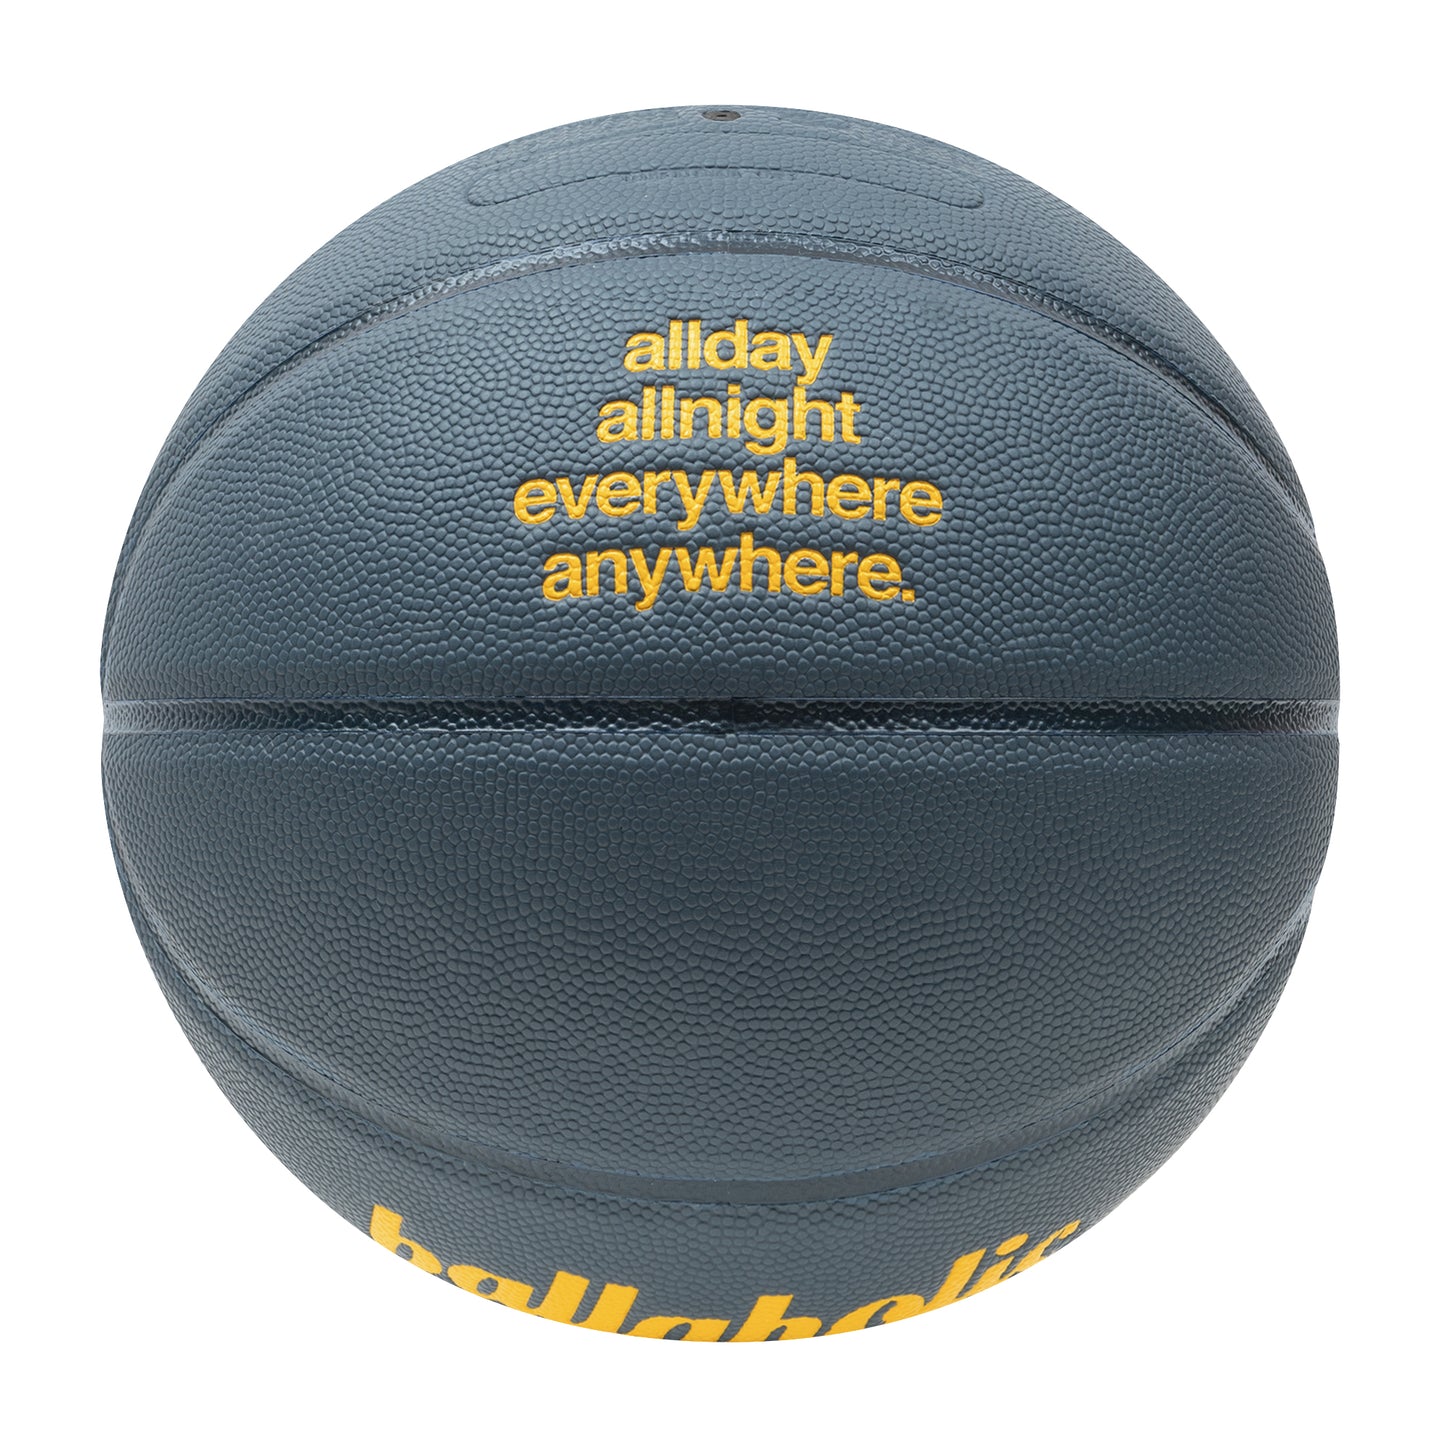 Playground Basketball / ballaholic x TACHIKARA (slate blue/dark navy/yellow)